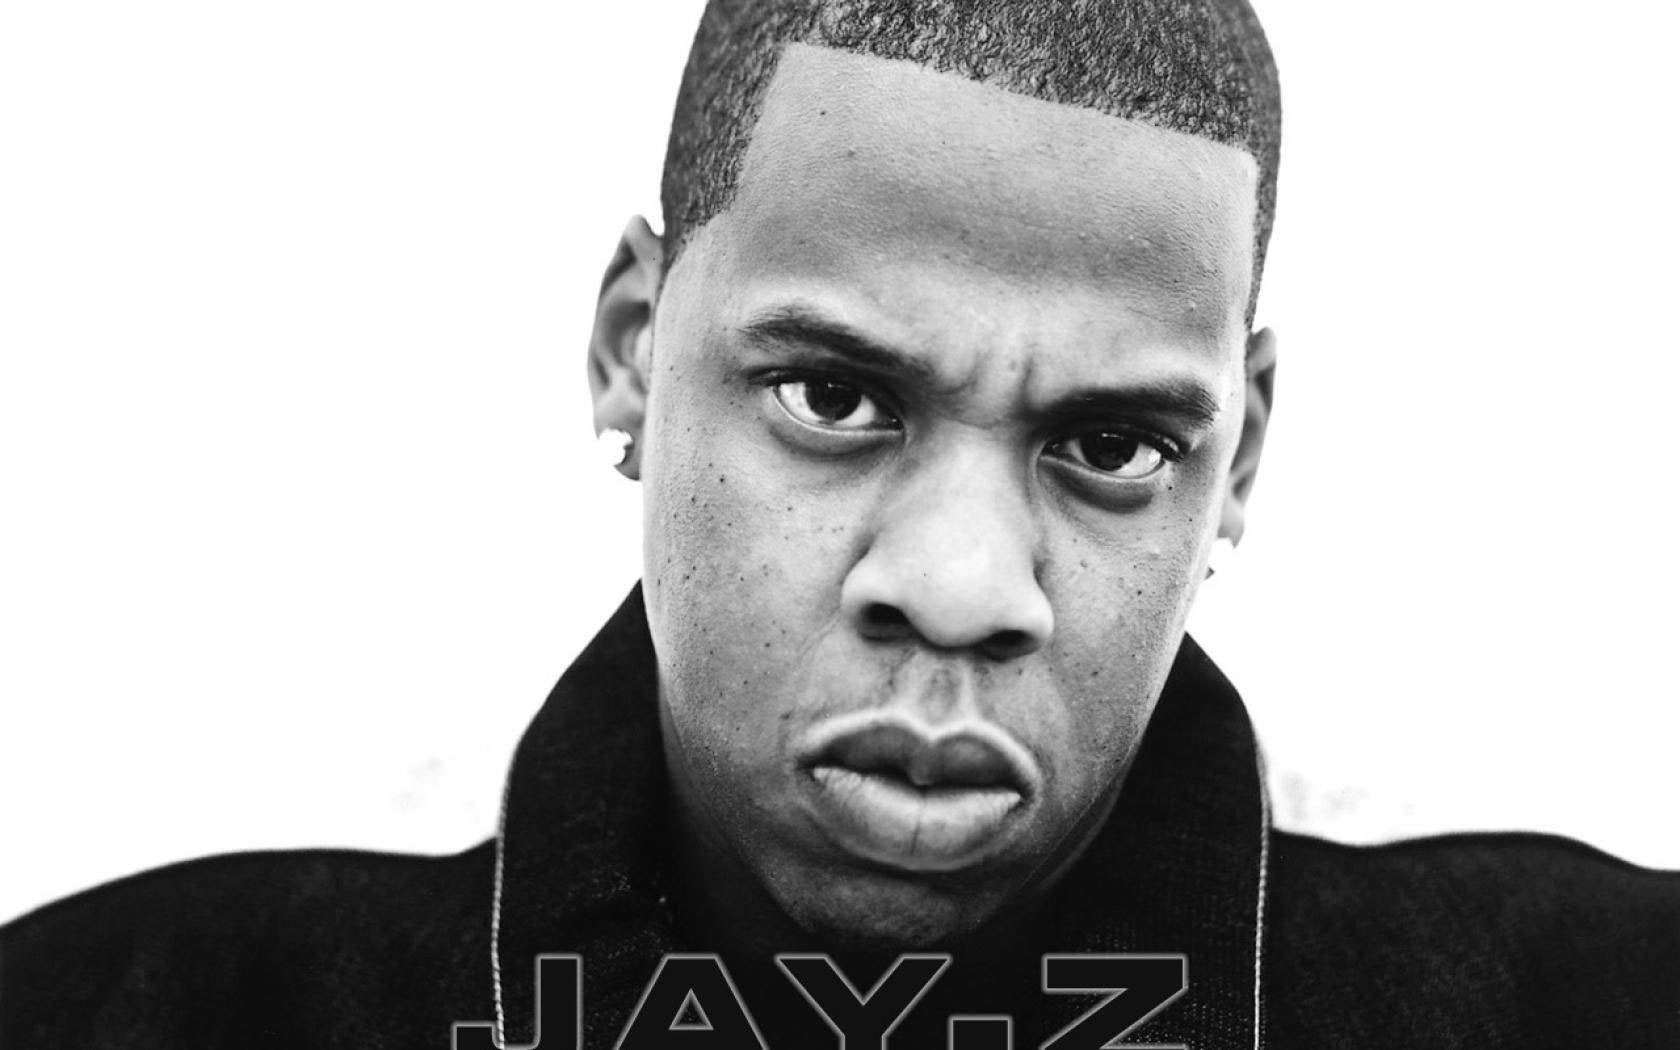 Jay Z Wallpaper - Resolution:1680x1050 - ID:47134 - wallha.com